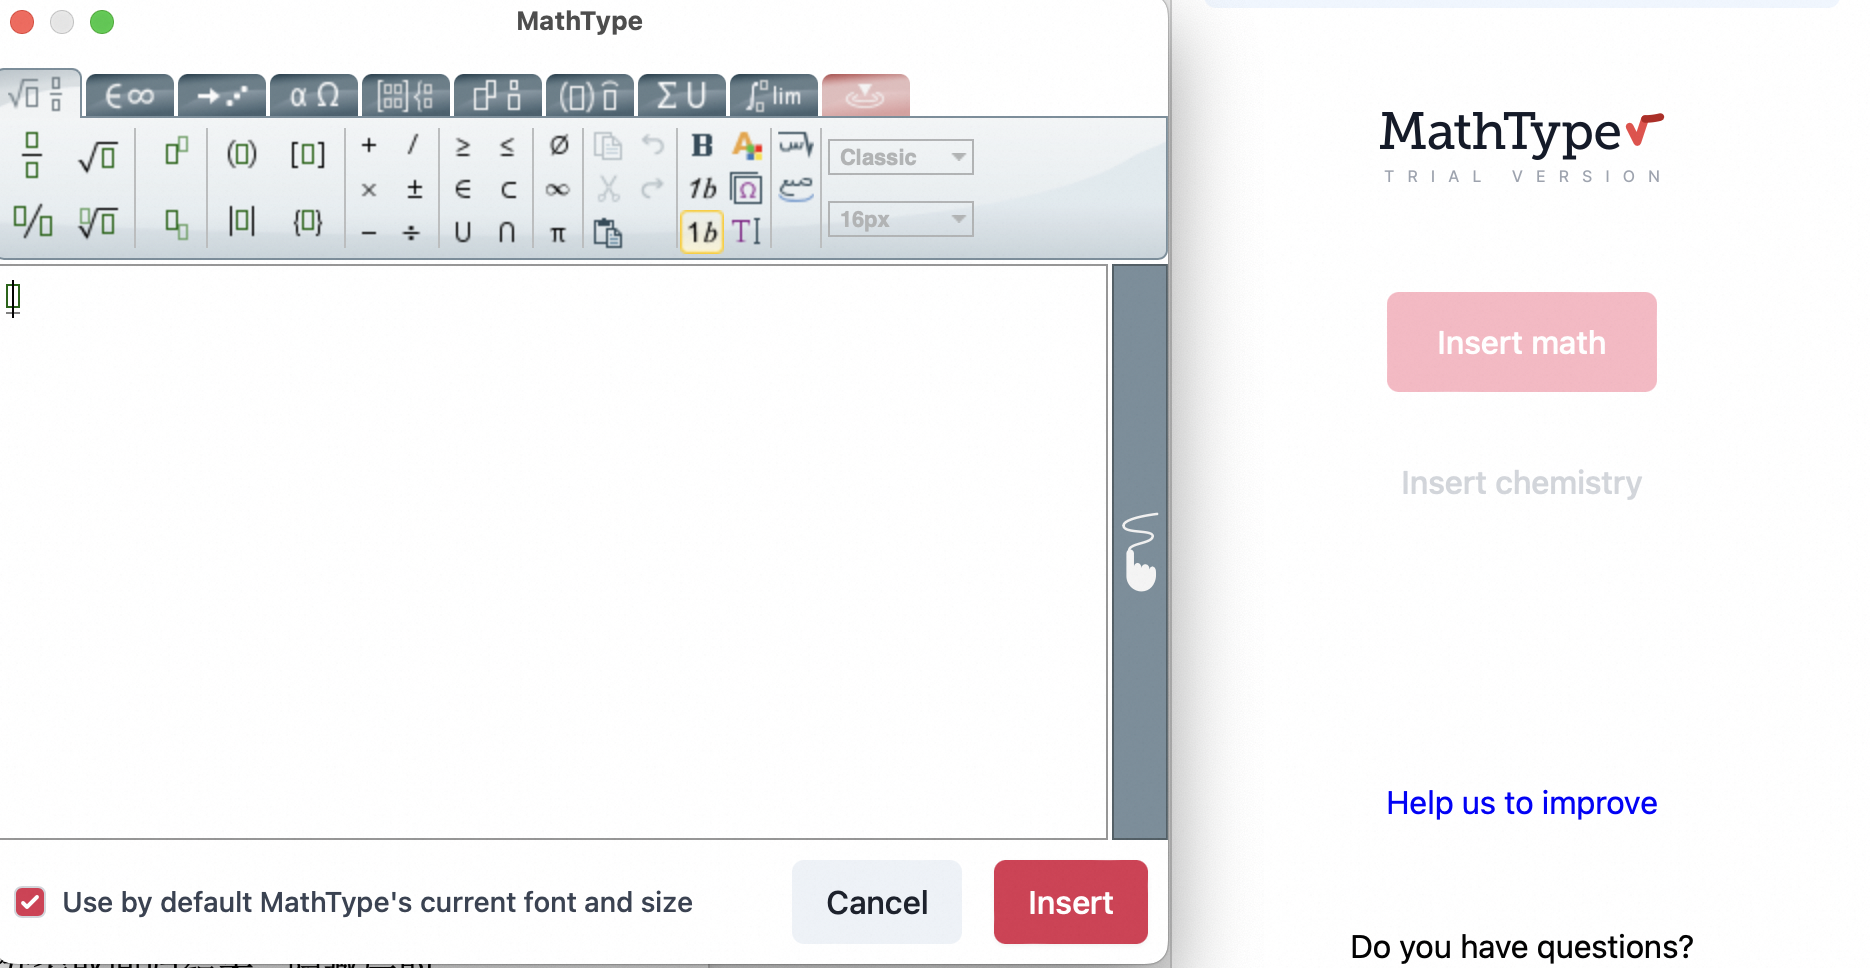 苹果笔记本 macbook 在 office word 中使用 mathtype 的方法